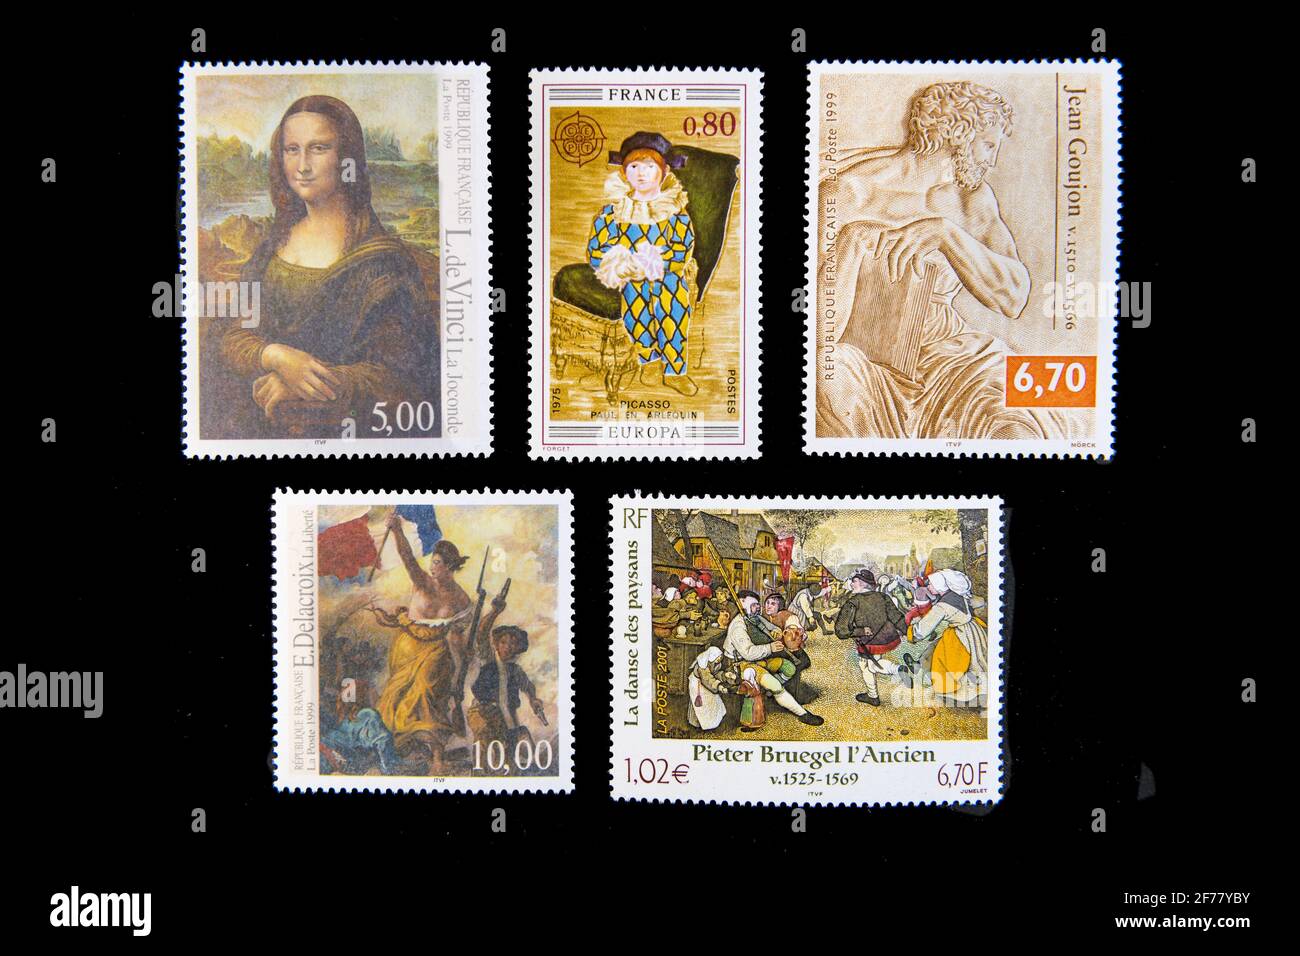 France, Paris, stamps, famous art pieces Stock Photo